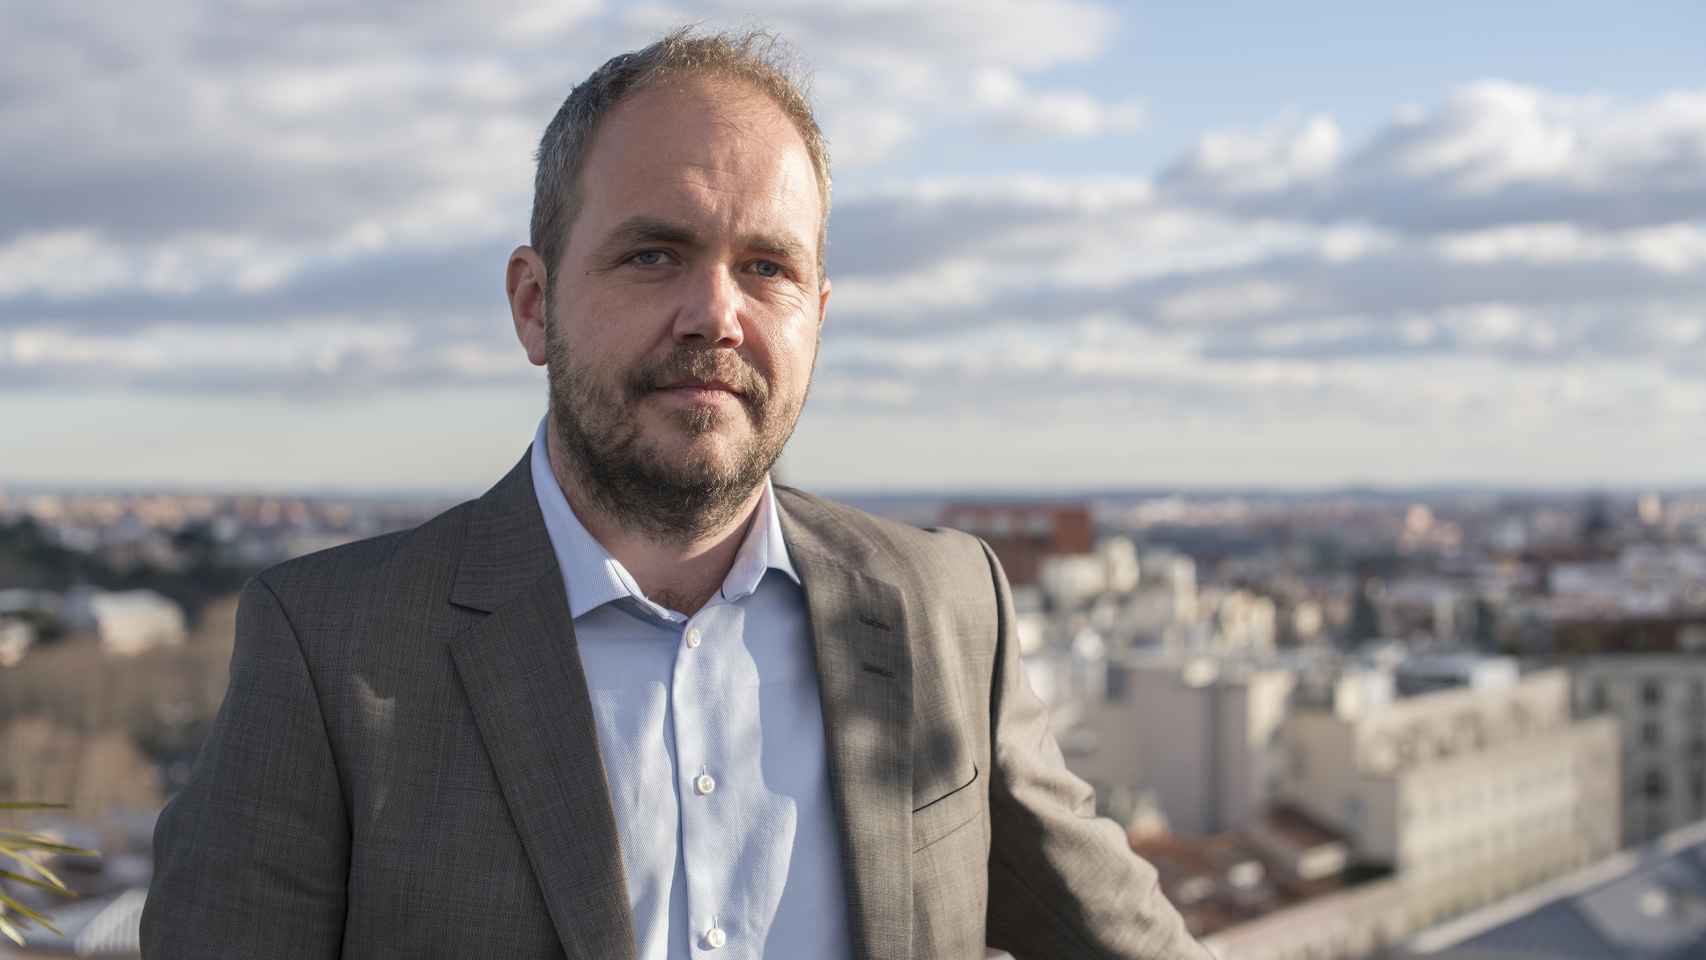 Fredrik Gillström, CEO de Adamo, en una imagen de archivo